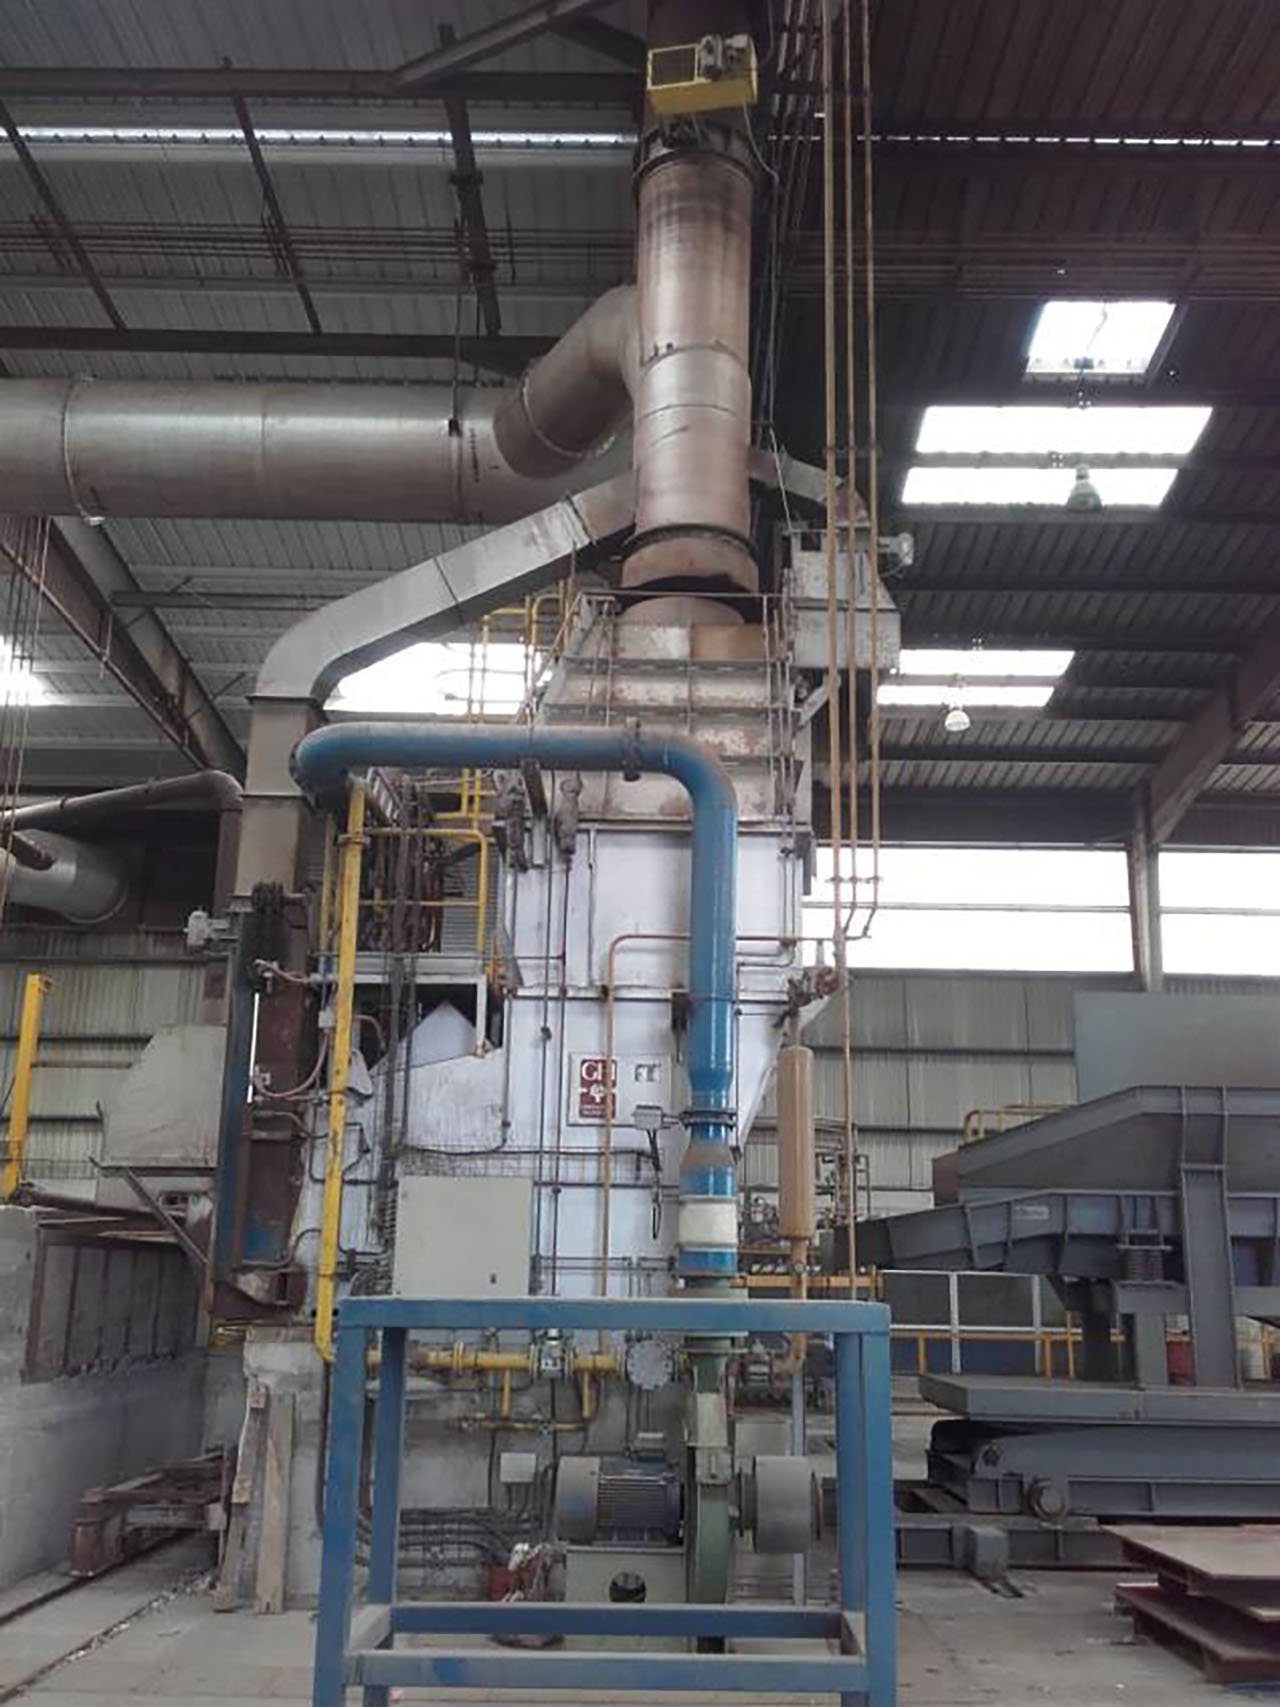 Aluminium remelting plant IA2541, used